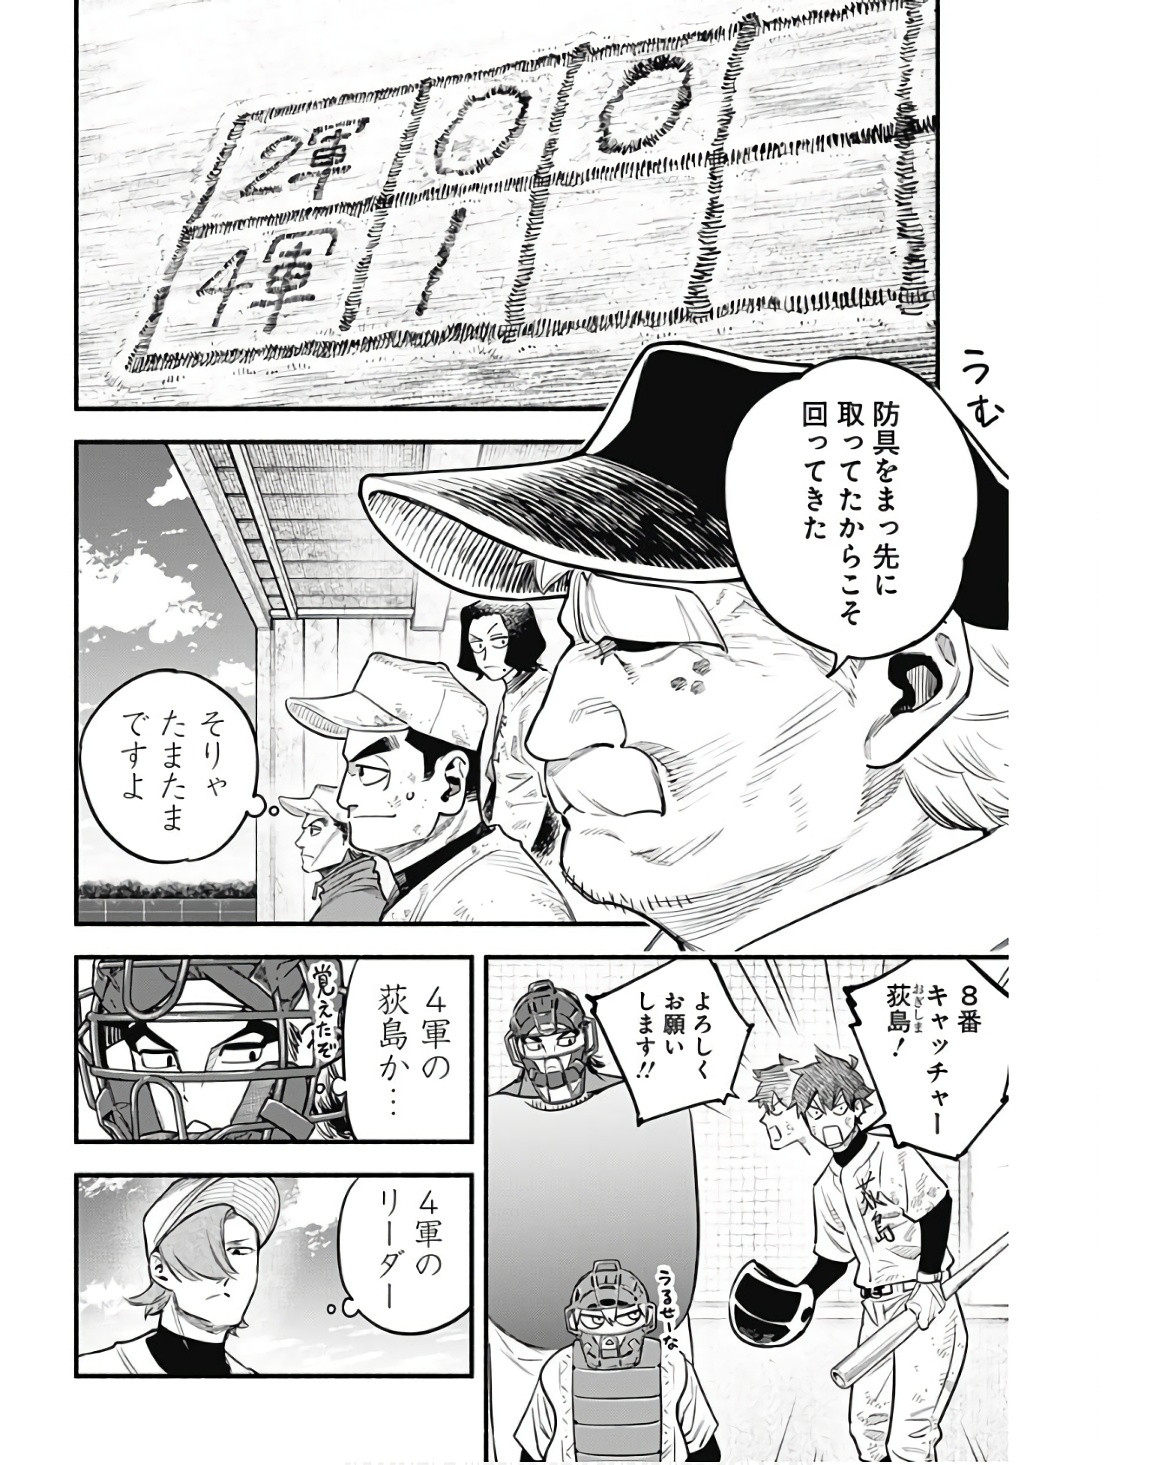 4-gun-kun (Kari) - Chapter 39 - Page 2